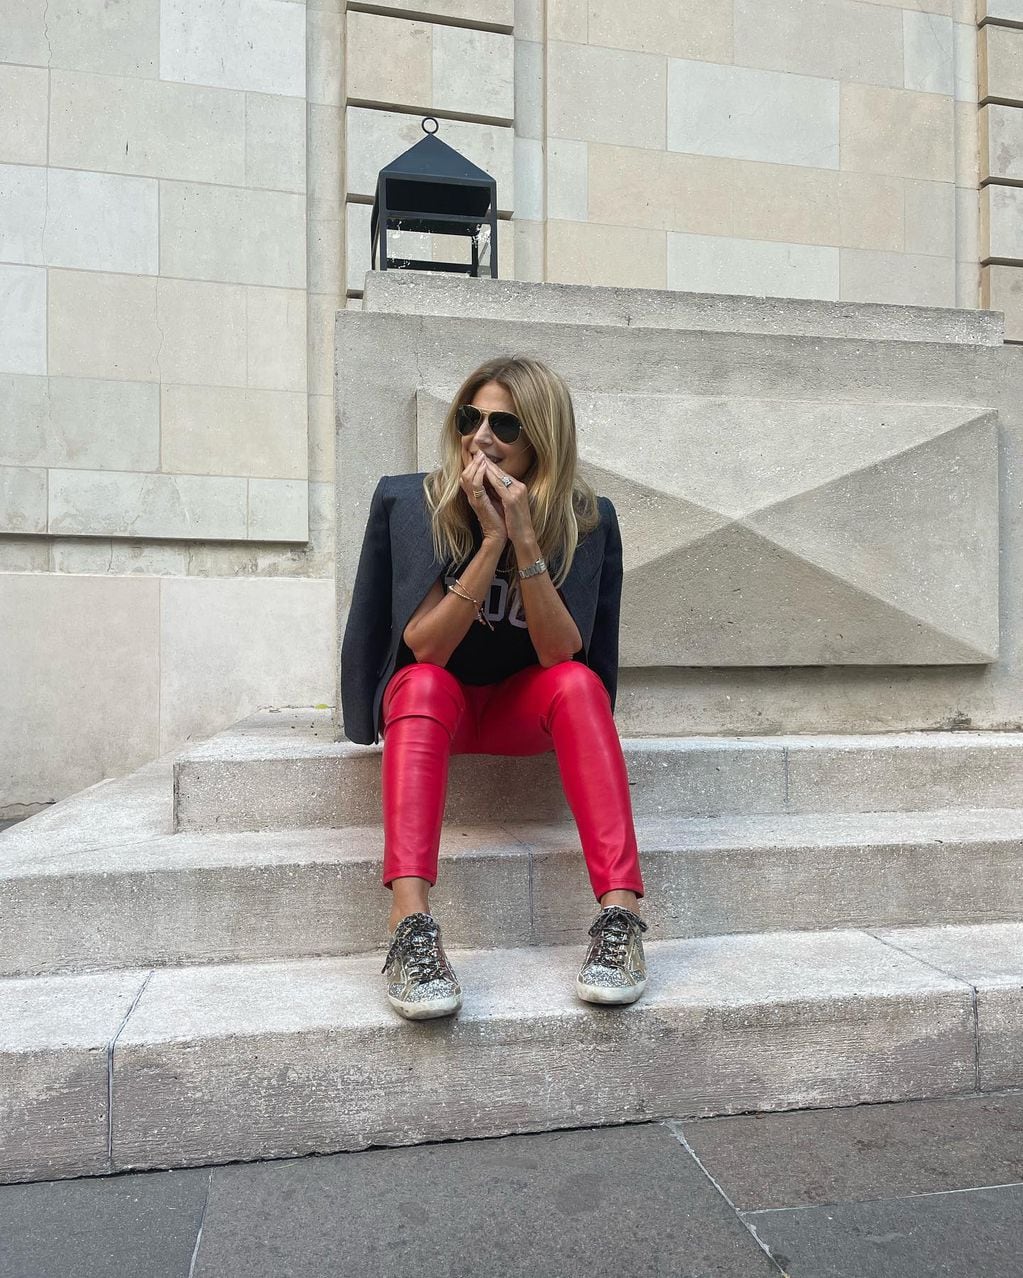 Flavia Palmiero comparte su look canchero con leggins rojos de cuero ecológico